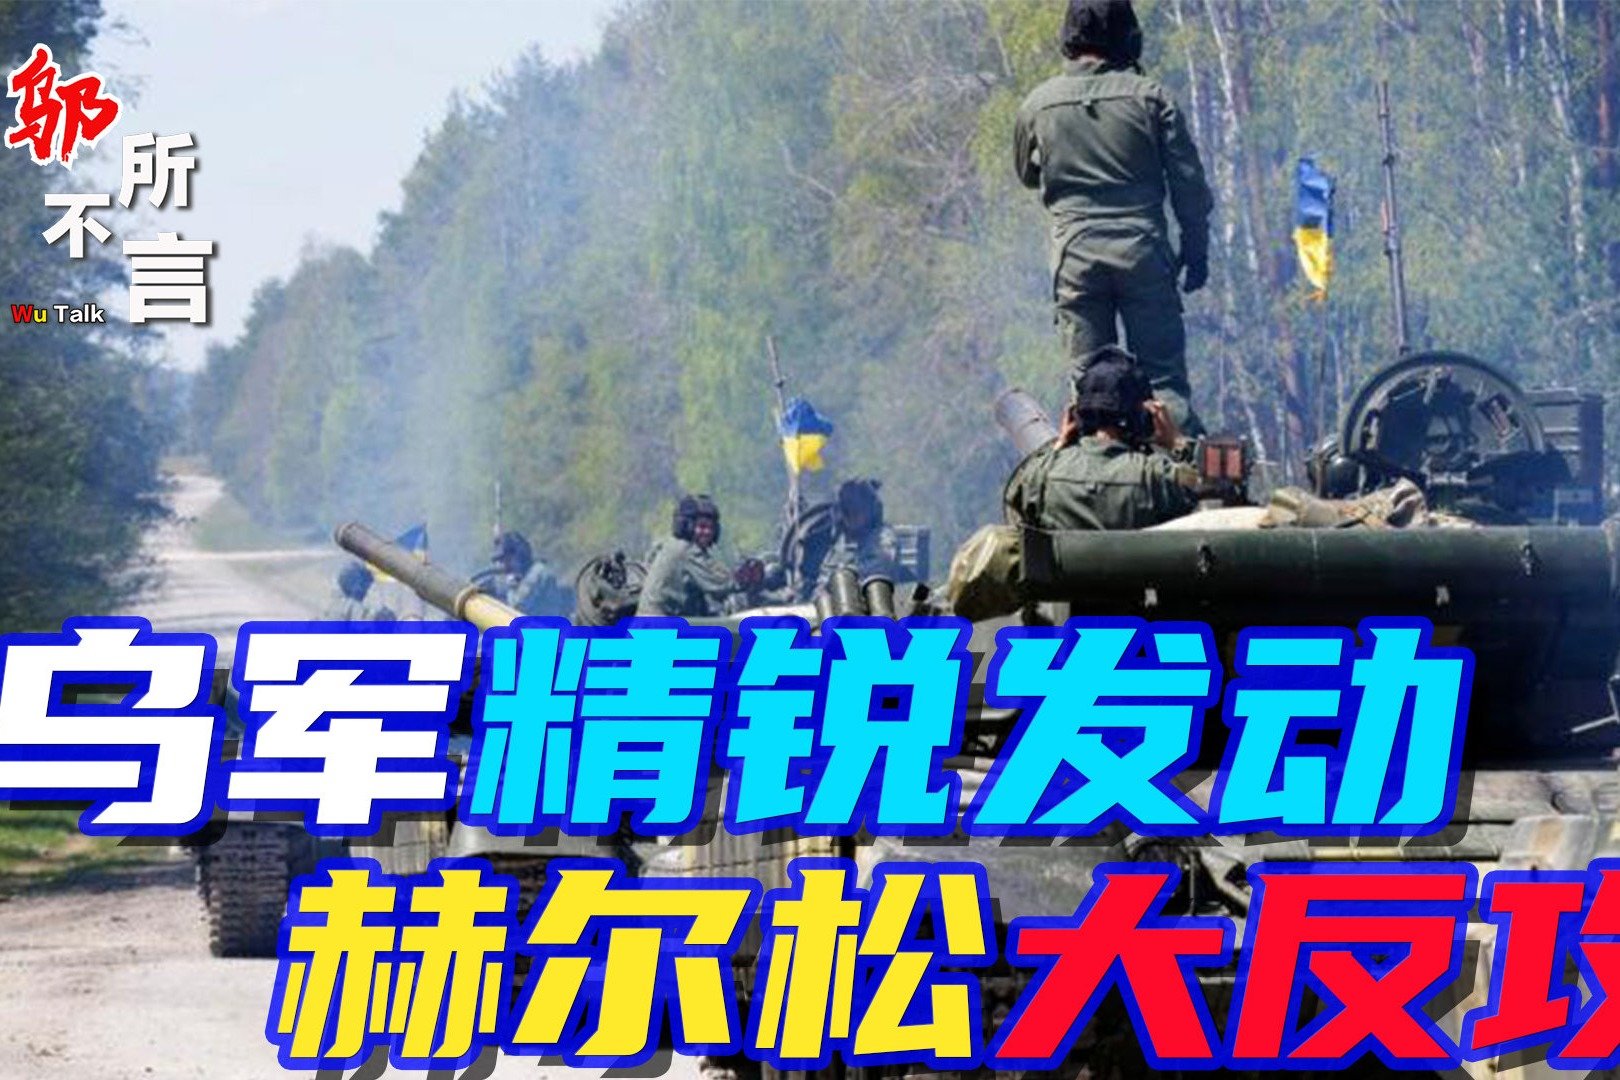 还活着？俄罗斯公布画面：乌克兰蛇岛80多名士兵投降，此前乌克兰总统泽连斯基称他们都已阵亡